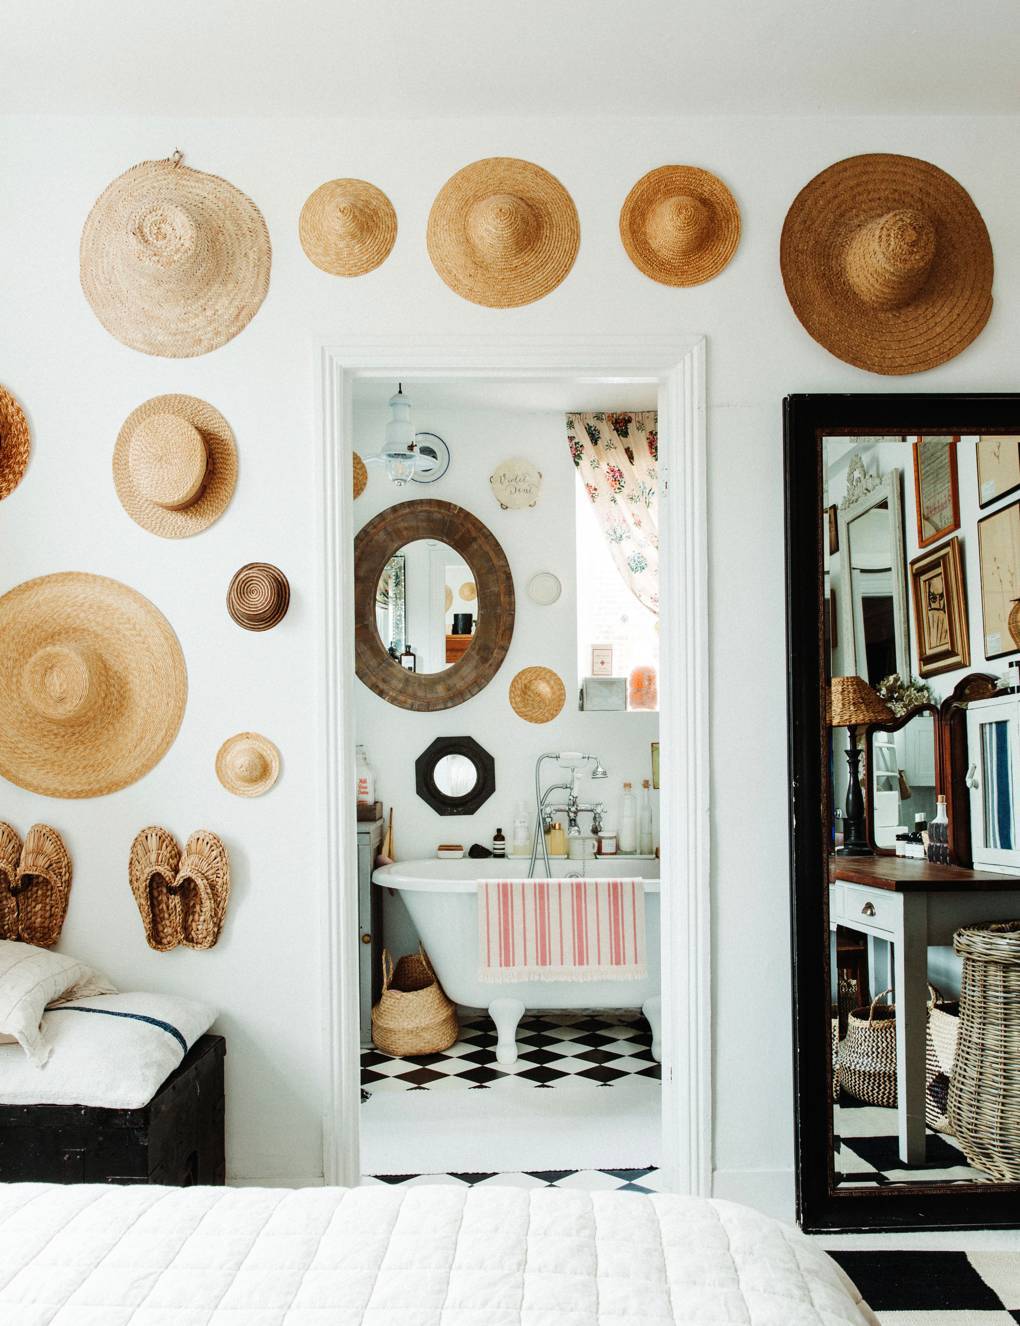 Wokół drzwi do łazienki wisi kolekcja kapeluszy – wśród nich są kupione podczas licznych podróży na lokalnych bazarach, a jeden z nich należał do babci Violet. (Fot. Owen Gale dla House&Garden)